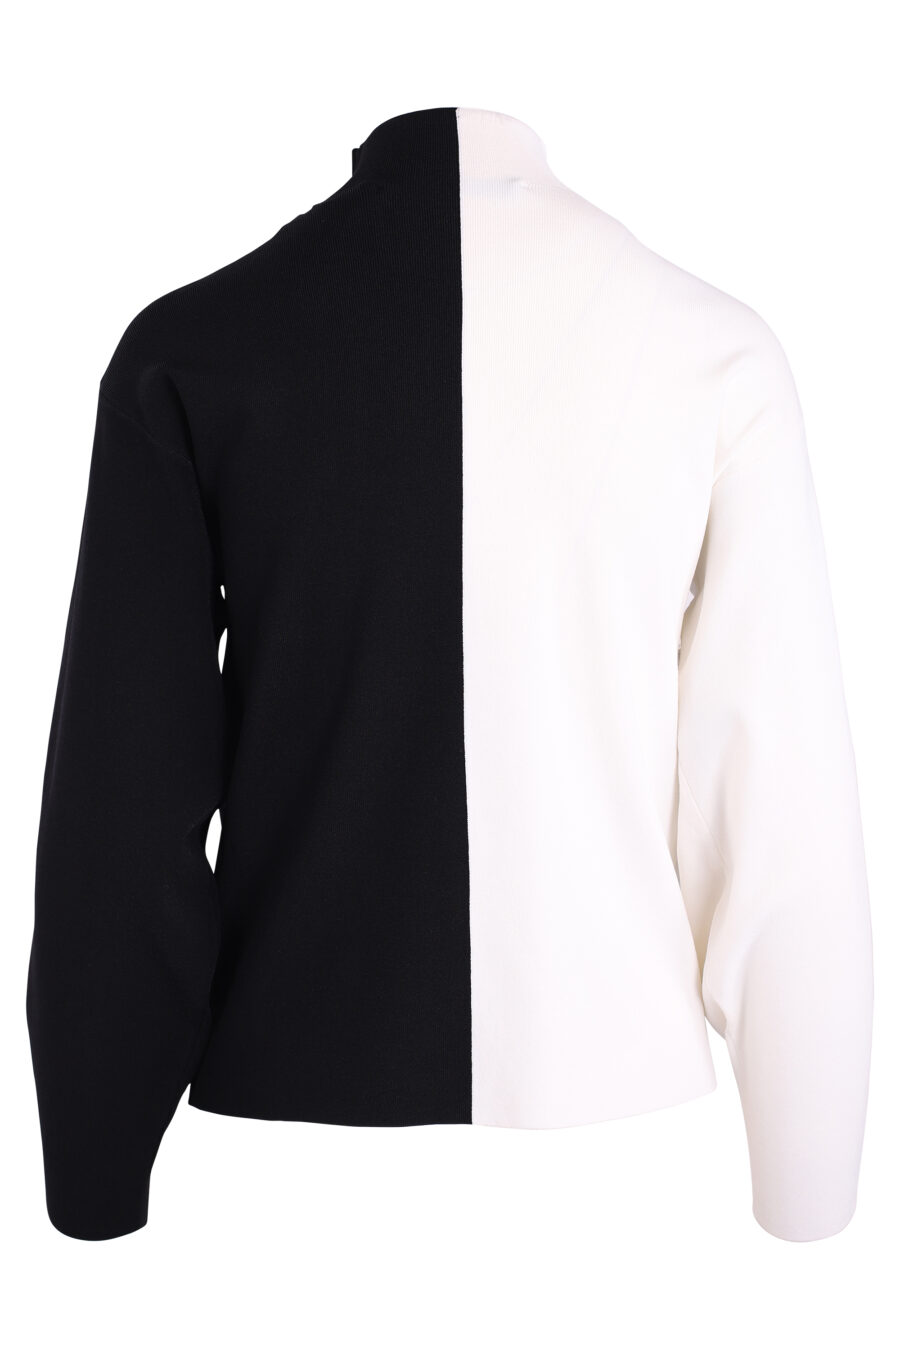 Zweifarbiger schwarz-weißer Pullover mit Maxilogue - IMG 3380